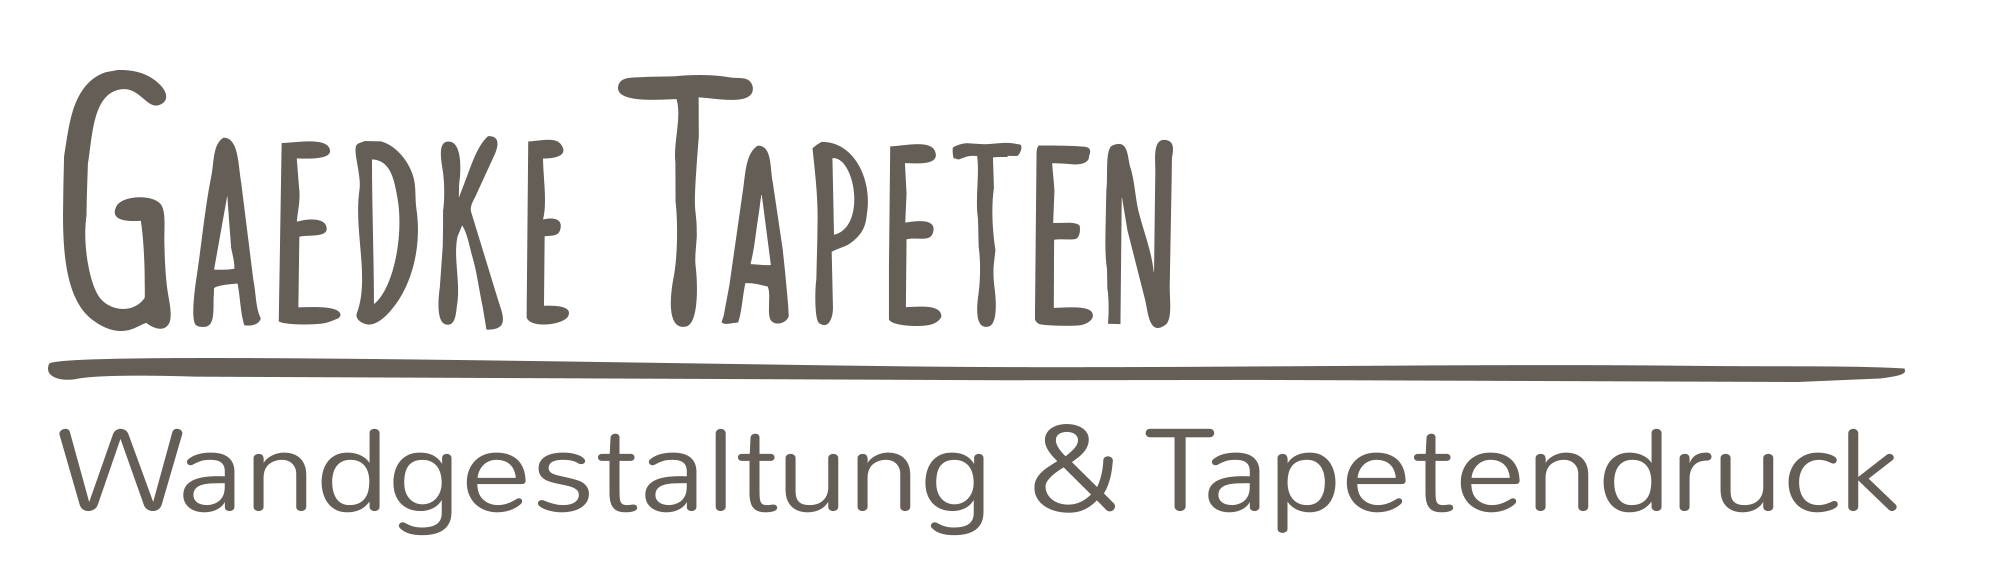 png: Gaedke Tapeten - Logo & Claim